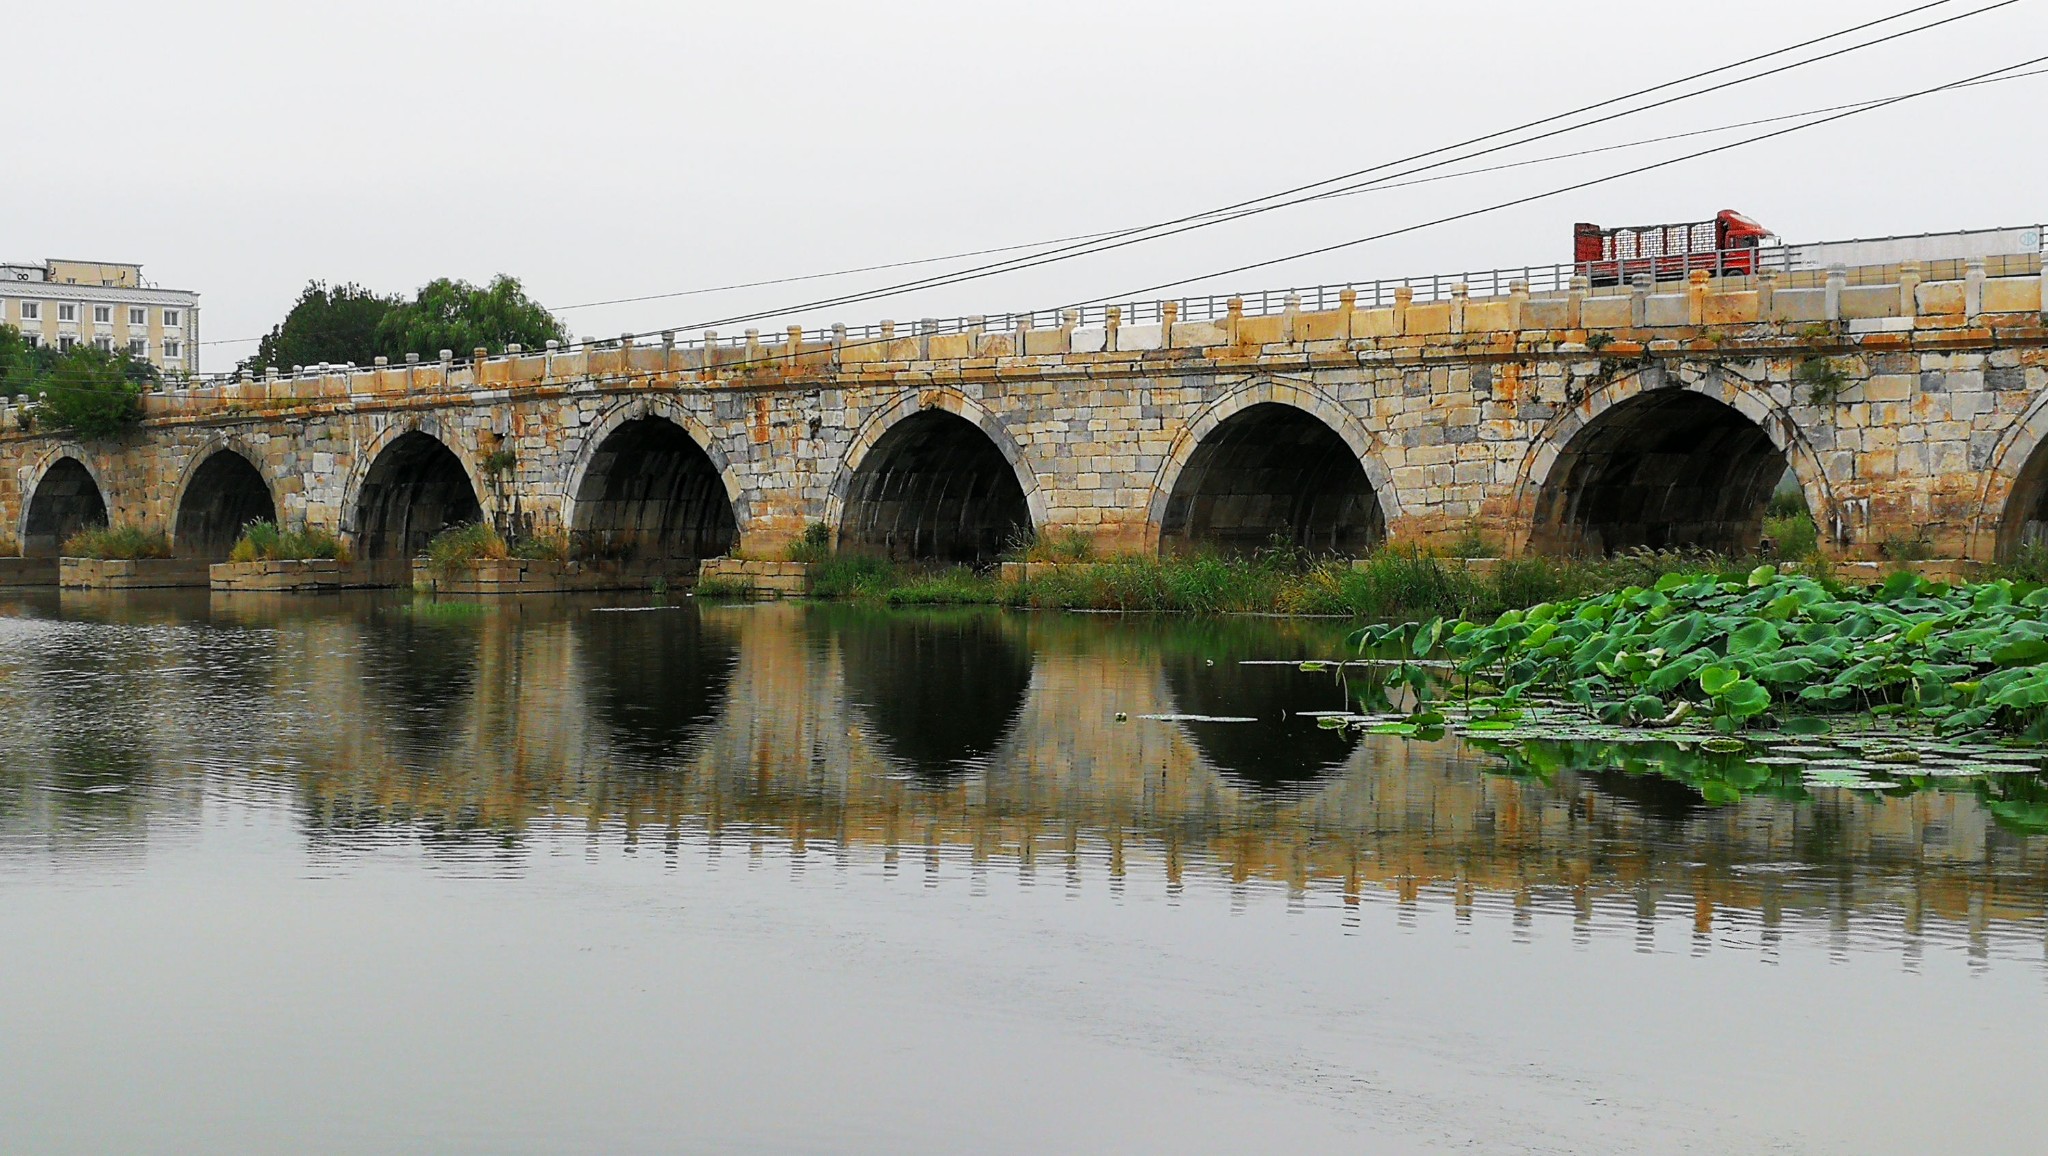 一天走两桥—房山琉璃河桥—涿州下胡良桥图片81,房山旅游景点